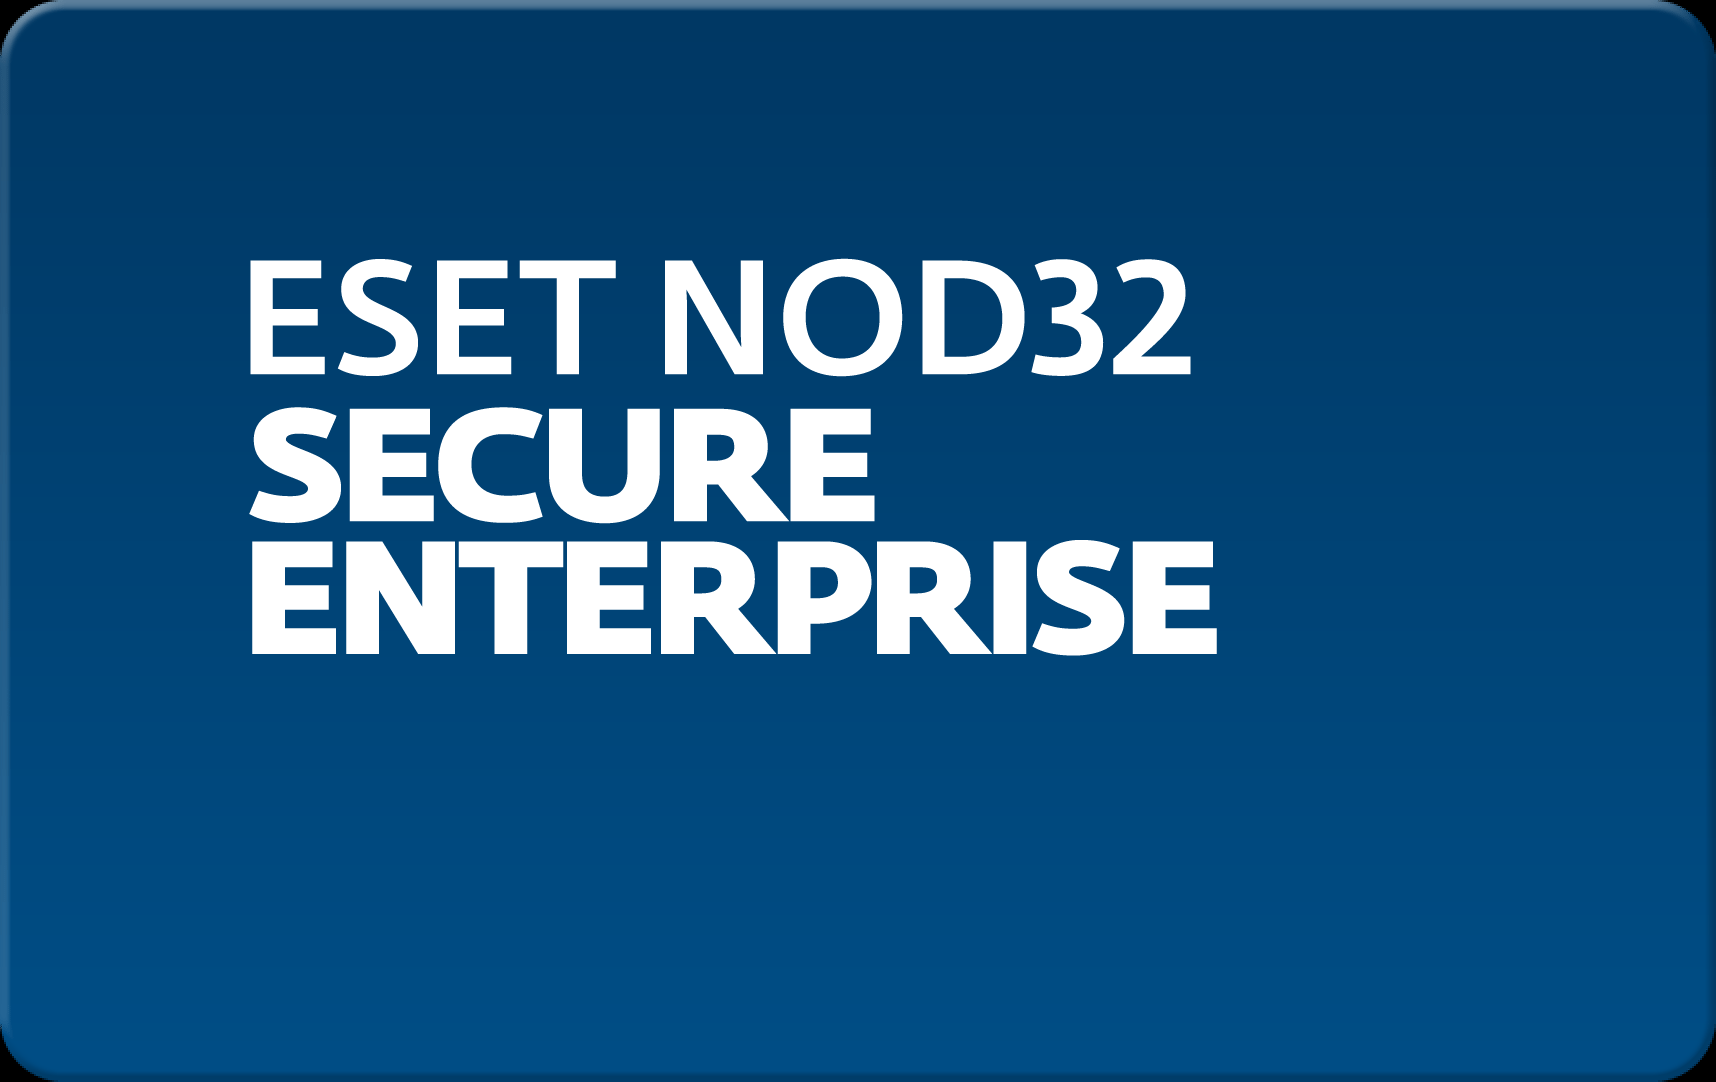        Eset NOD32 Secure Enterprise  155  NOD32-ESE-NS-1-155  #1